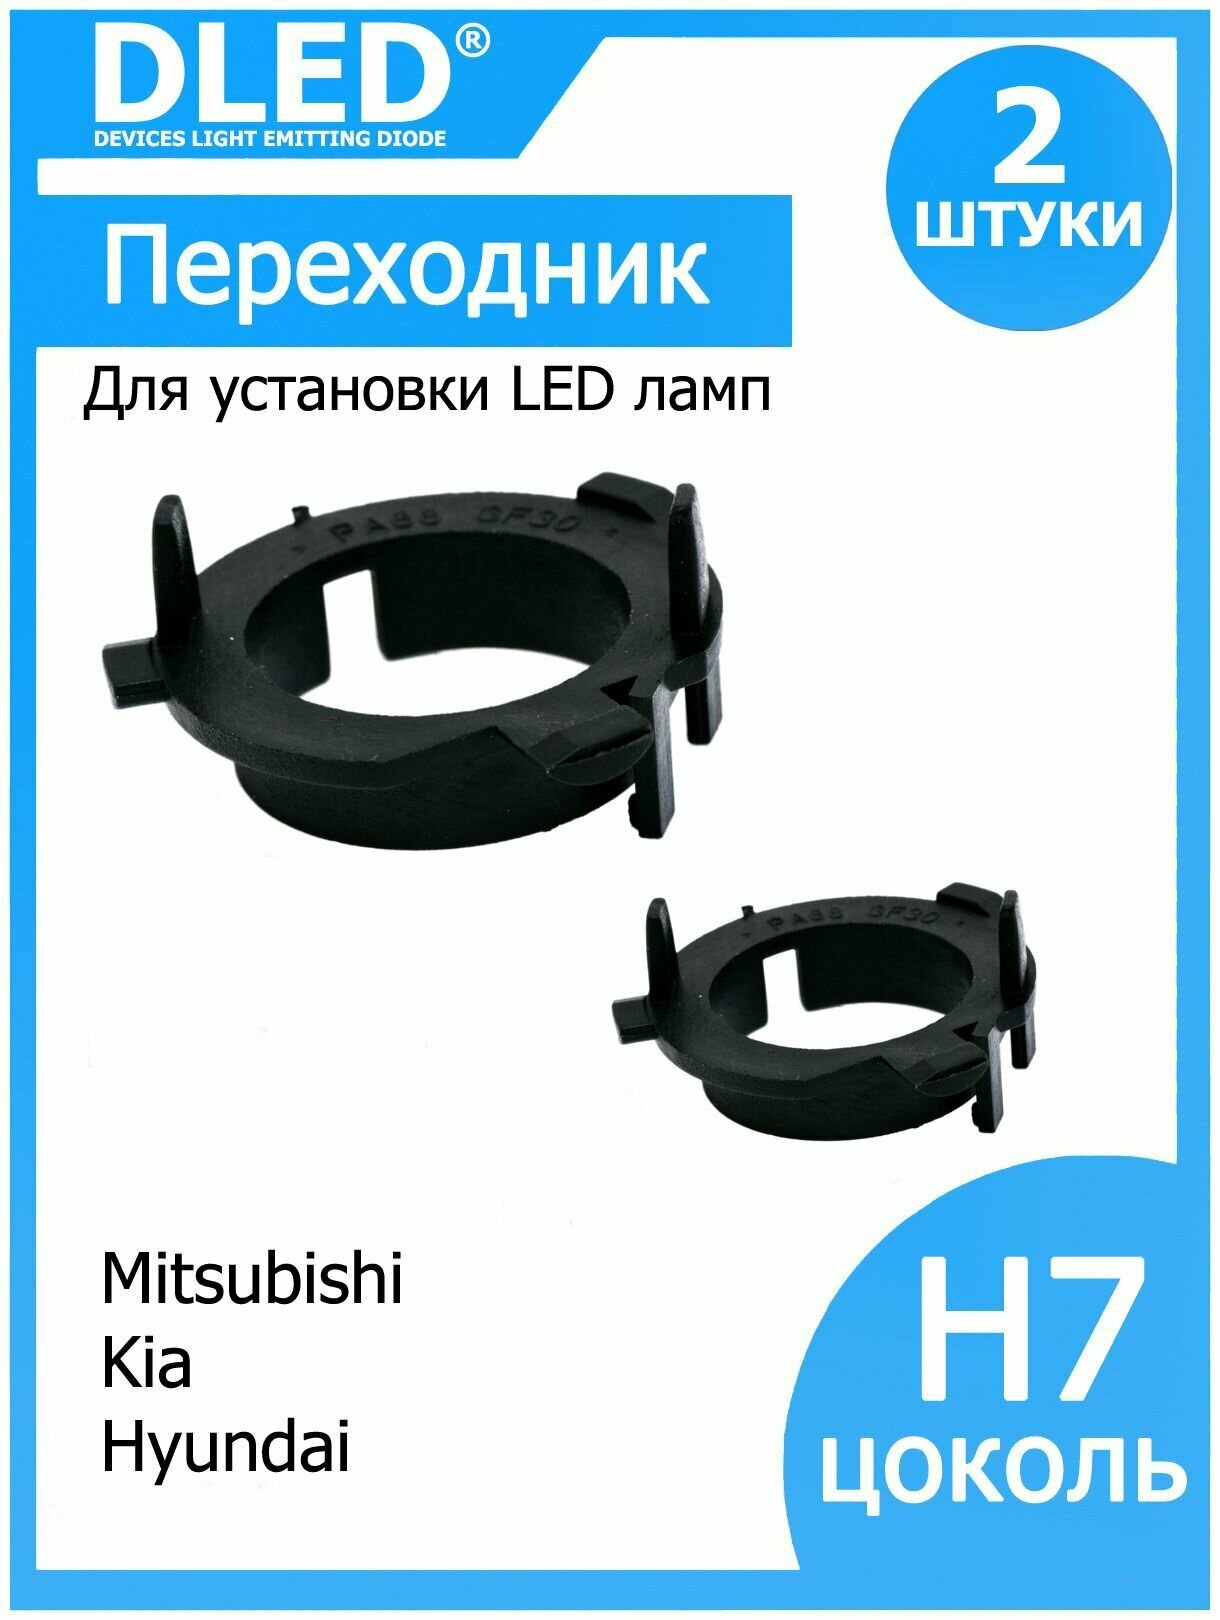 Переходник для установки светодиодных ламп H7 в фару тип 1 в Kia, Hyundai, Mitsubishi (2шт.)